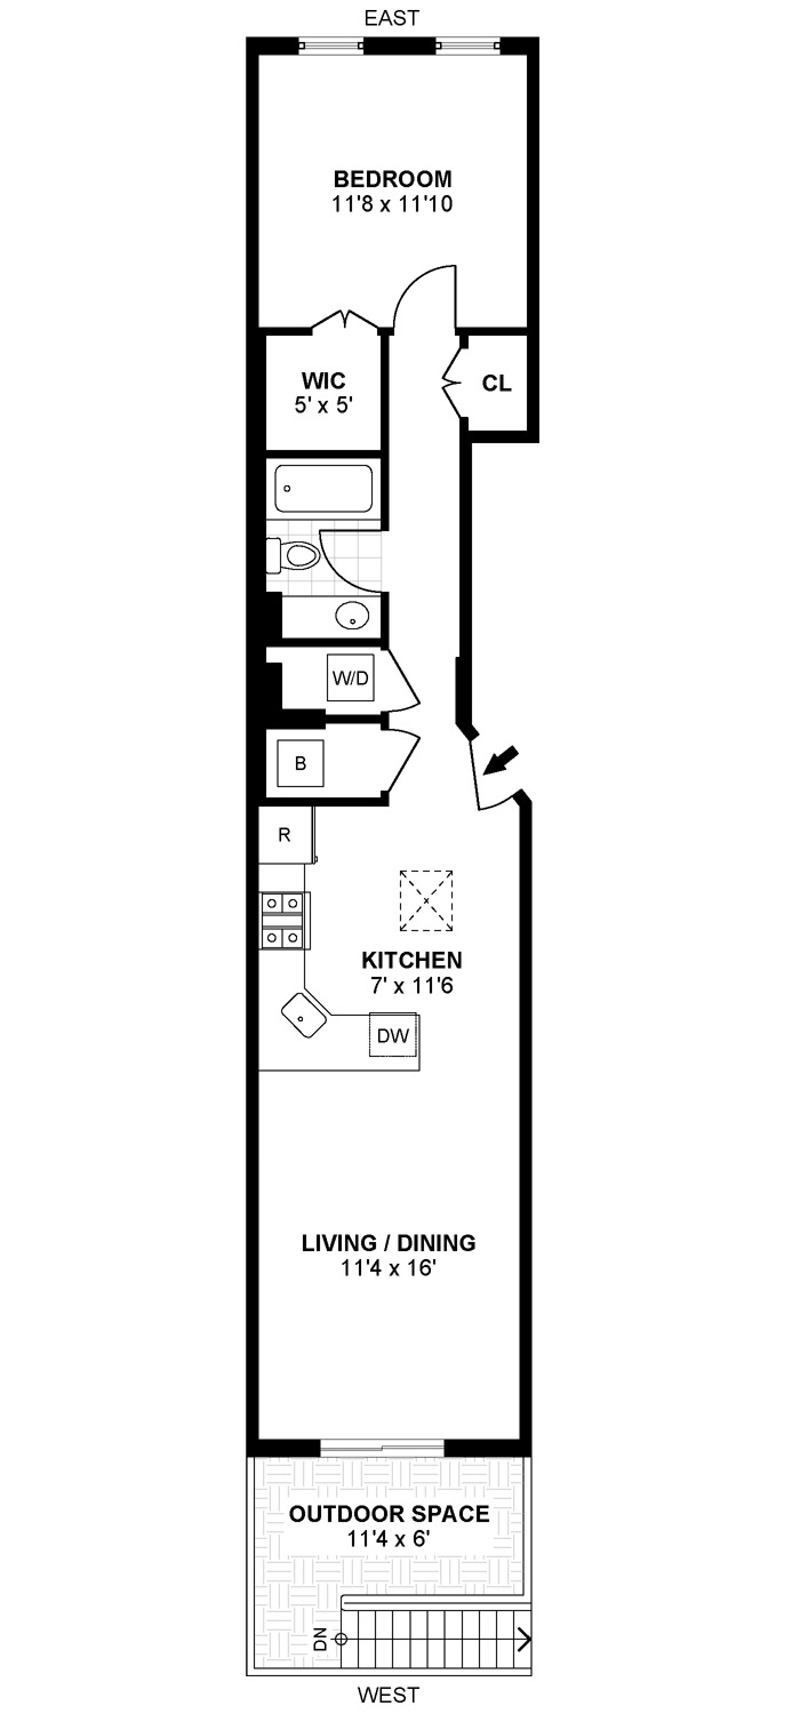 Floorplan for 512 Jefferson St, 4R